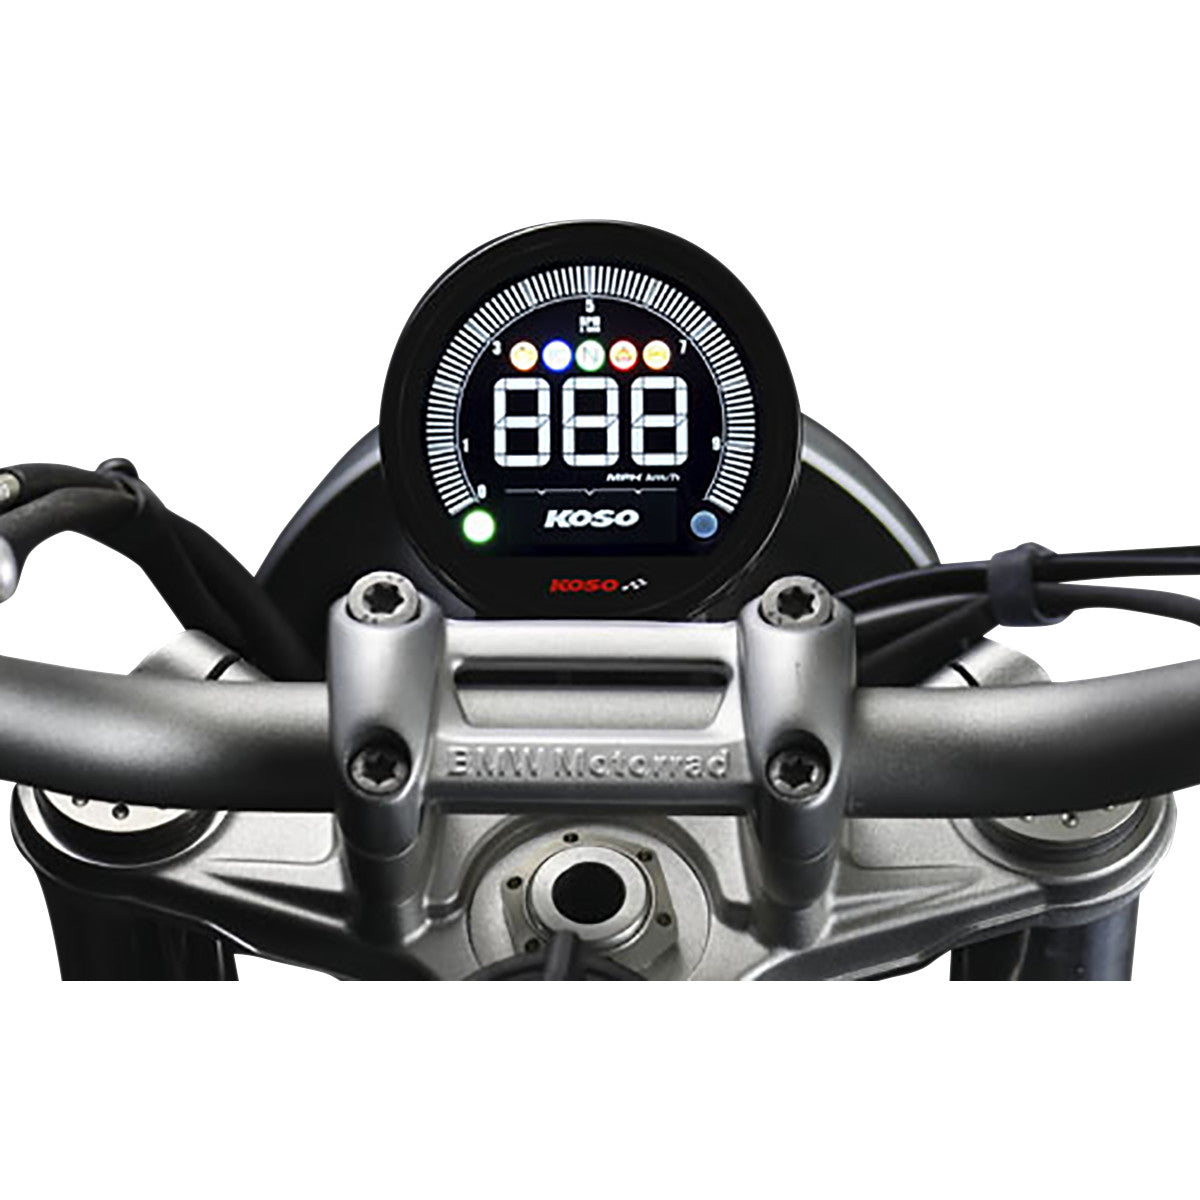 https://california-motorcycles.com/cdn/shop/products/BA0770011-copia.jpg?v=1633687252&width=1445